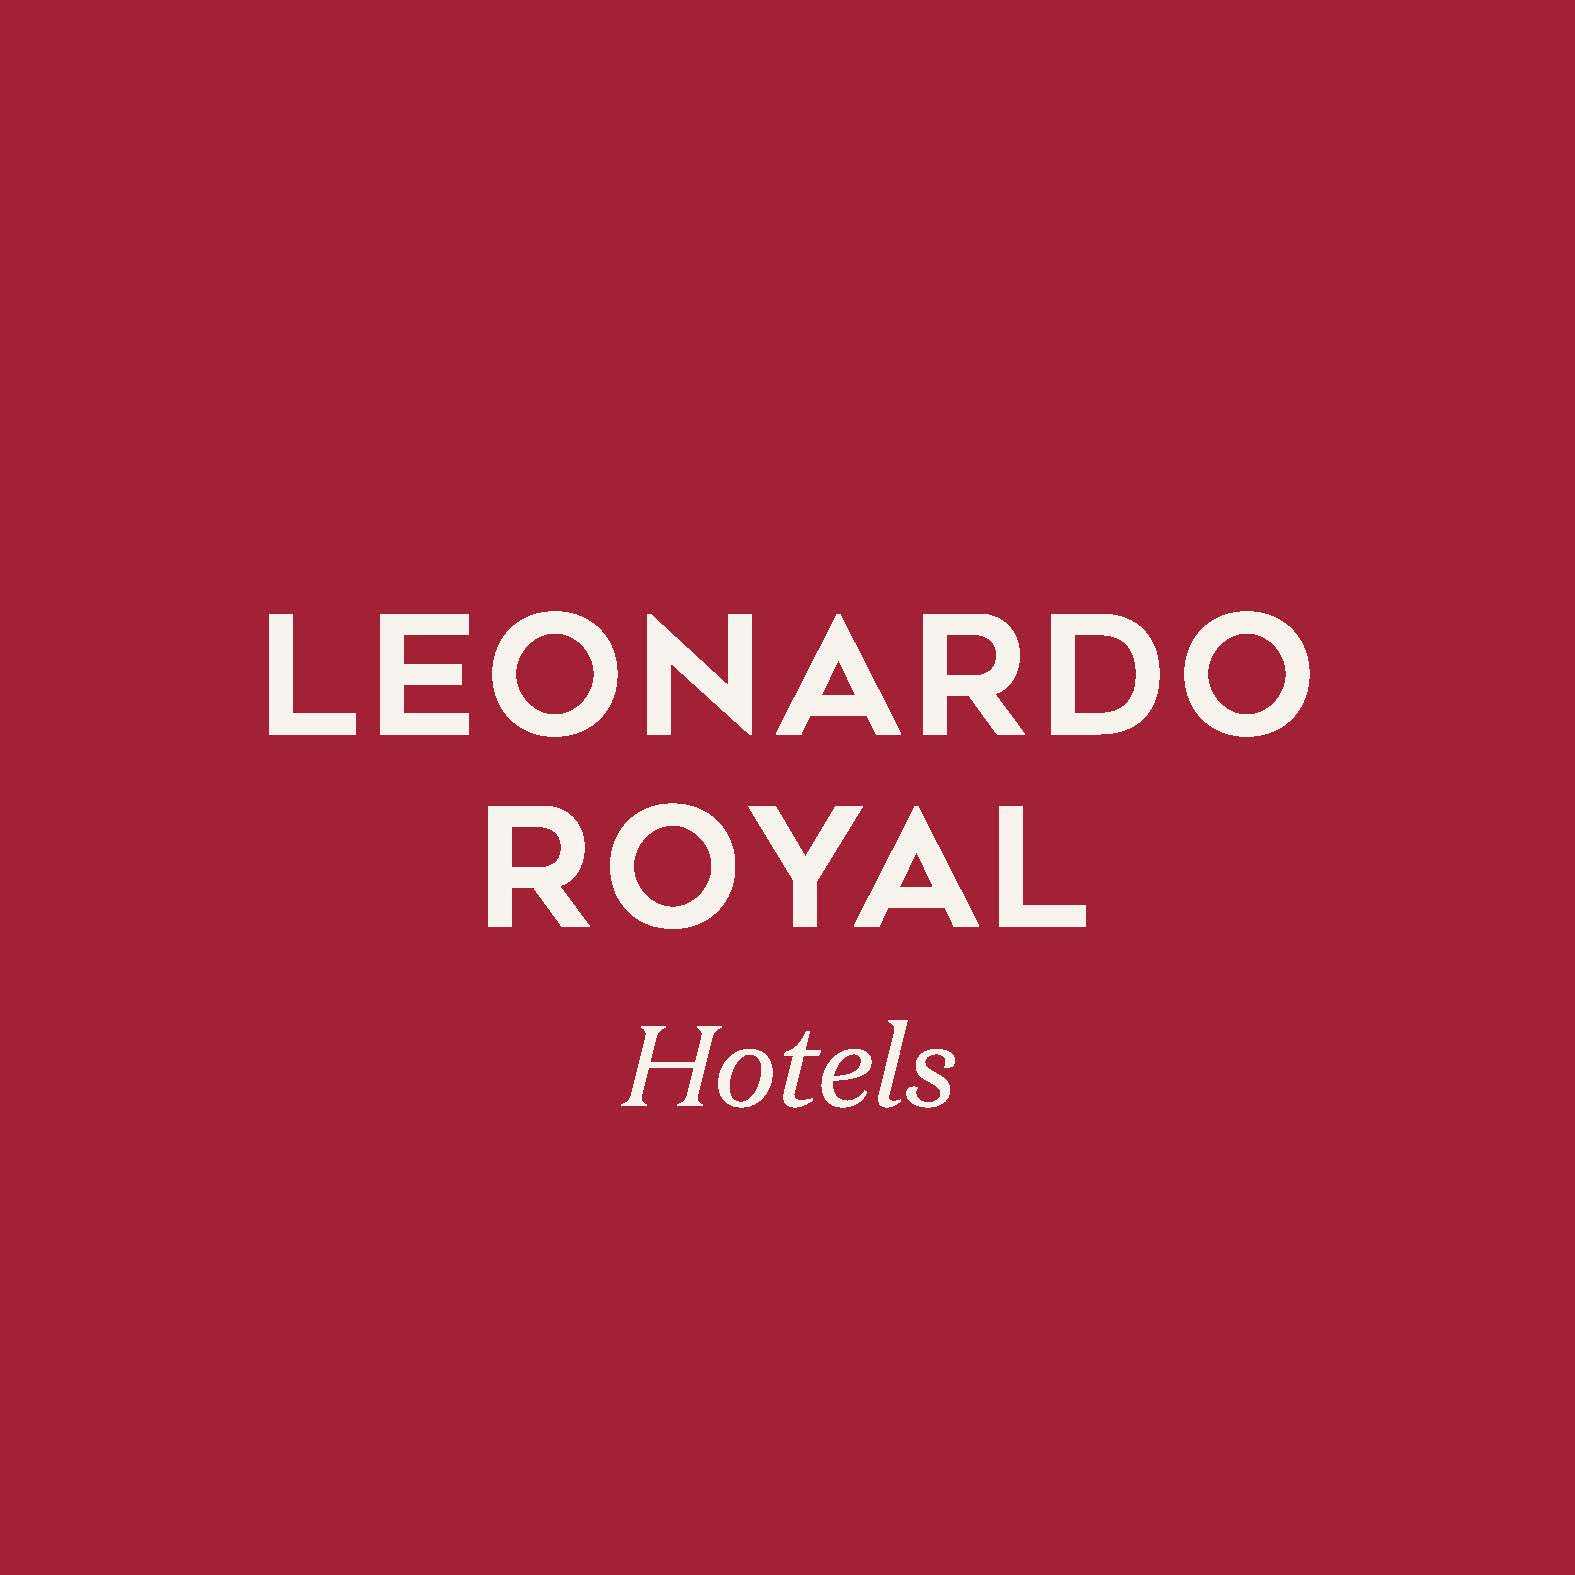 Leonardo Royal